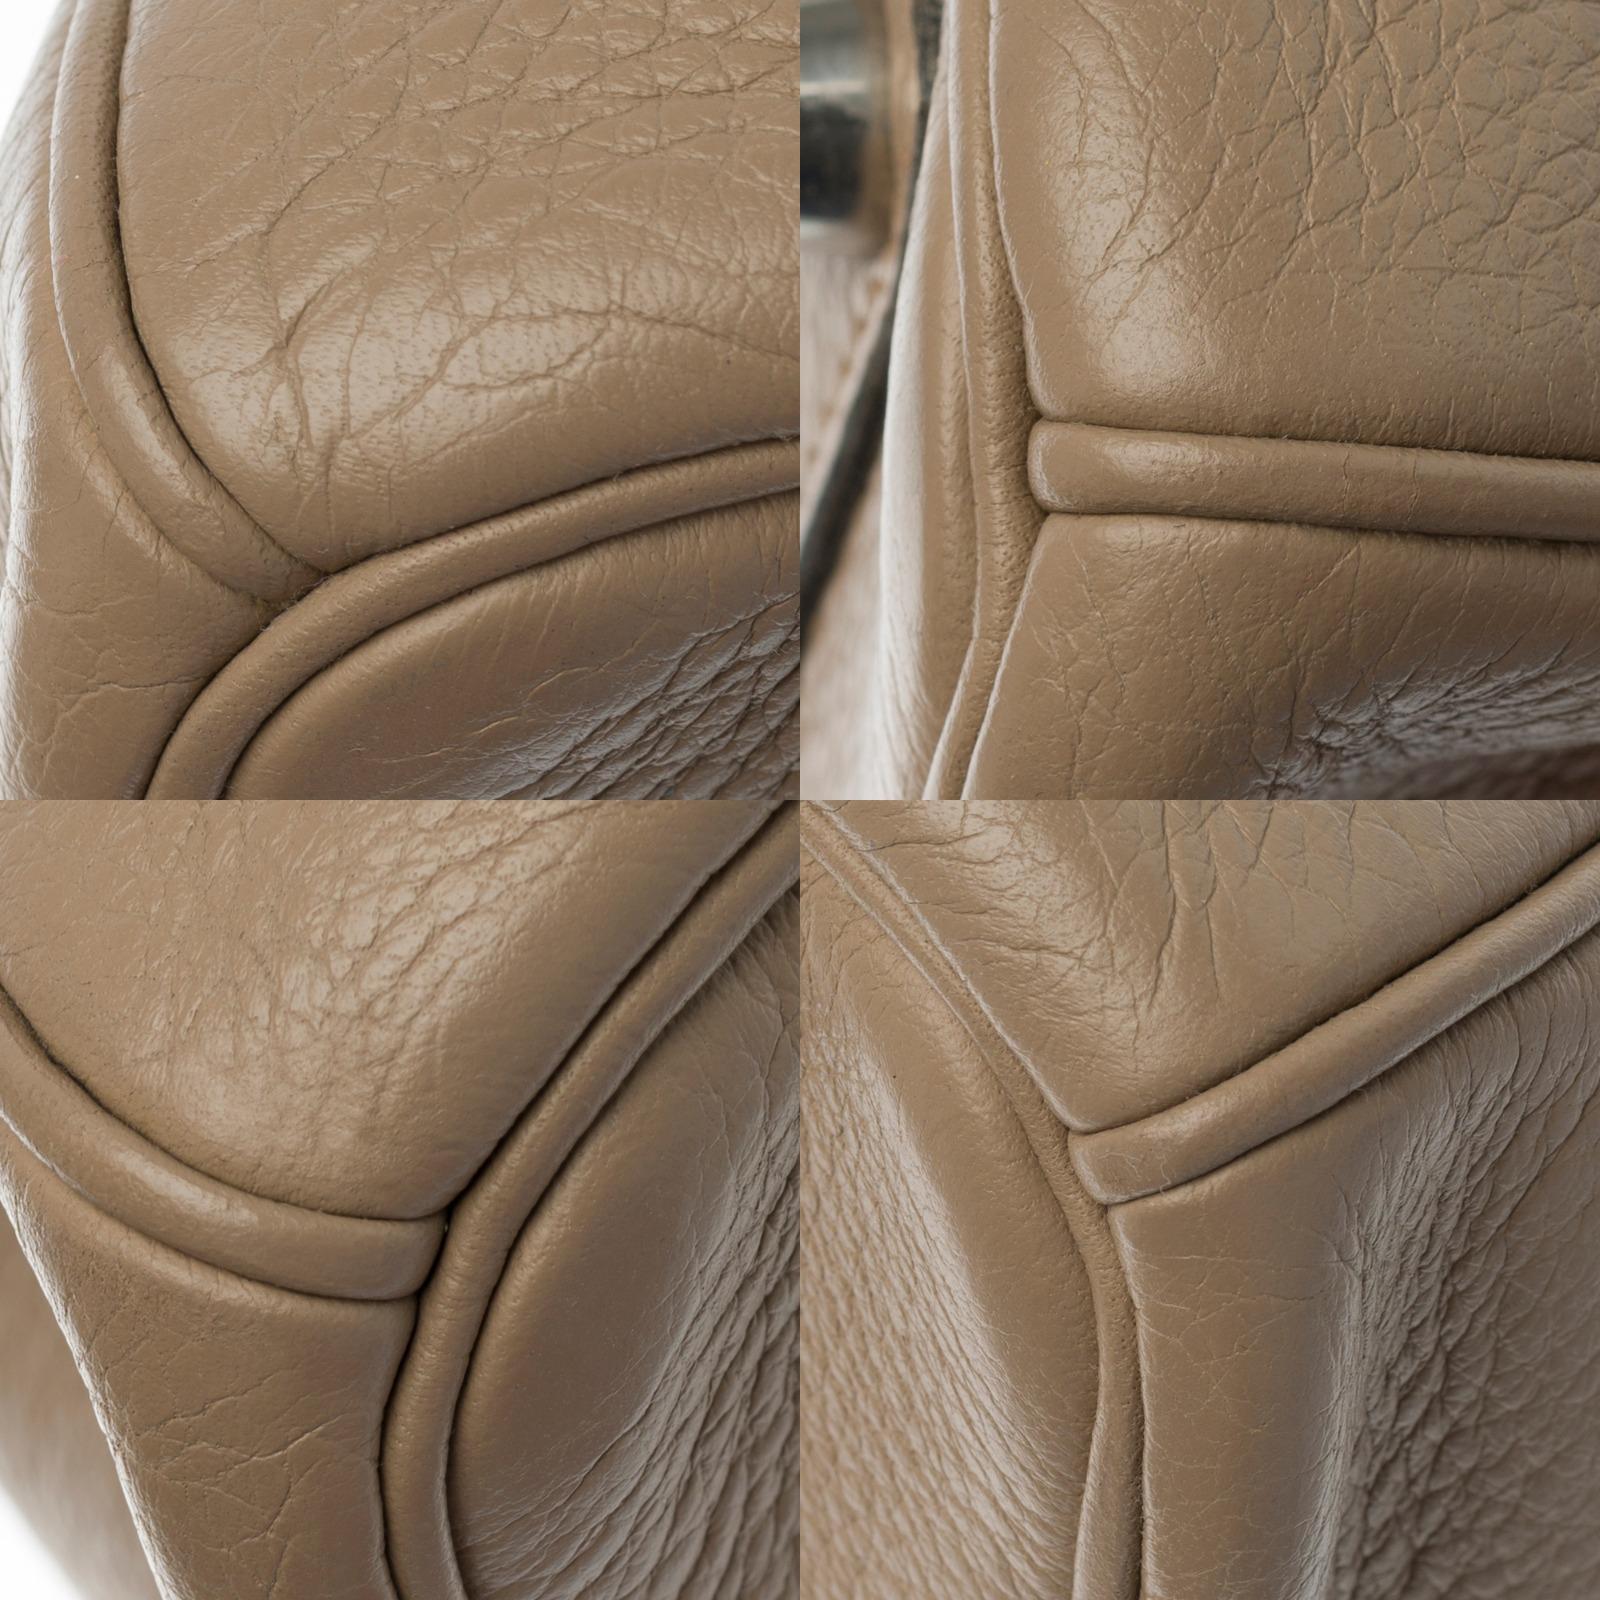 Hermès Birkin 30 handbag in Trench Togo leather, silver Palladium hardware 5